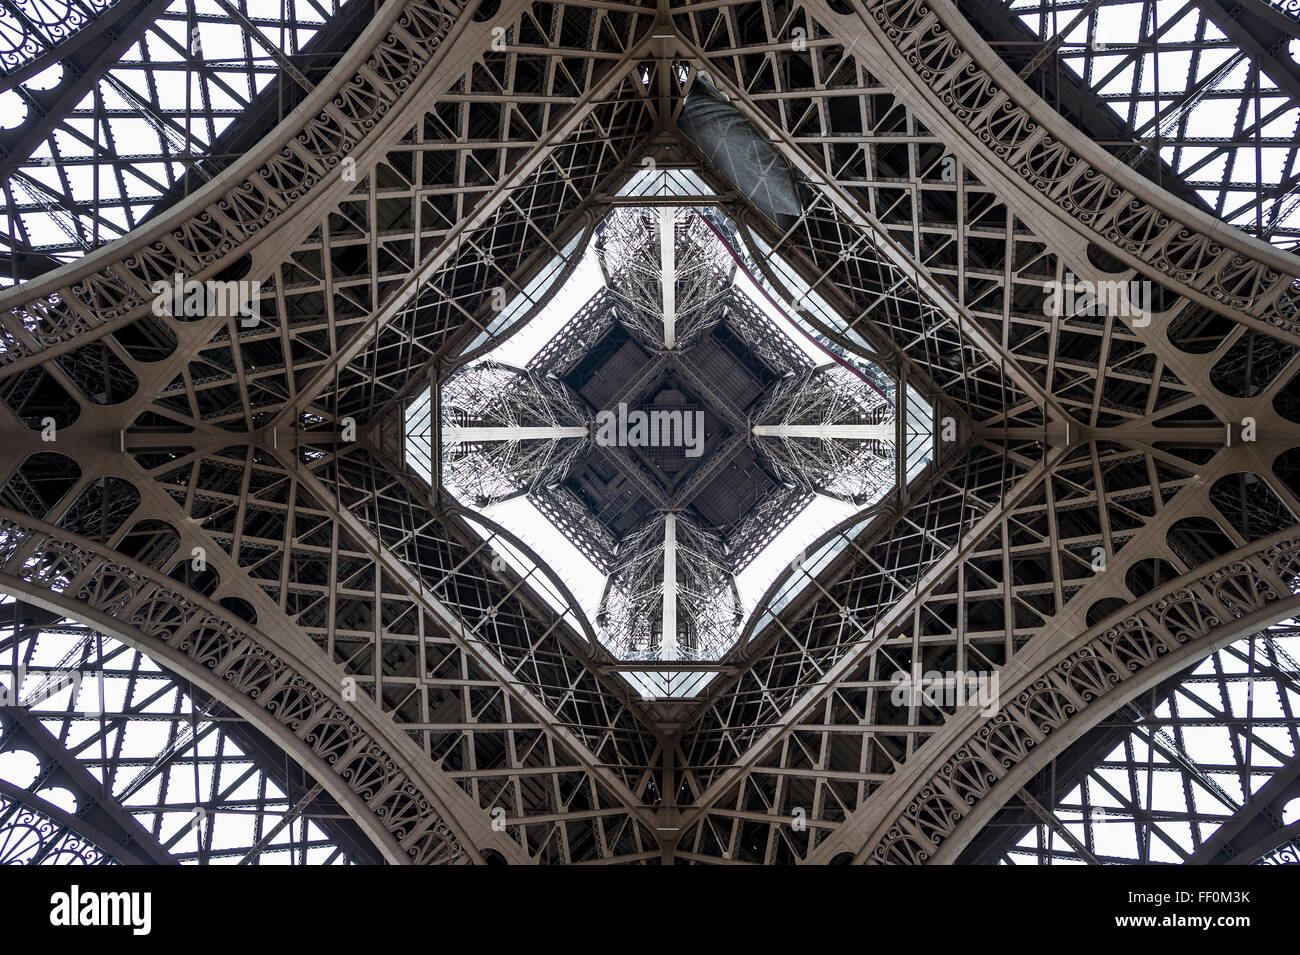 La Tour Eiffel, vu de dessous, Paris, Ile-de-France, France Banque D'Images